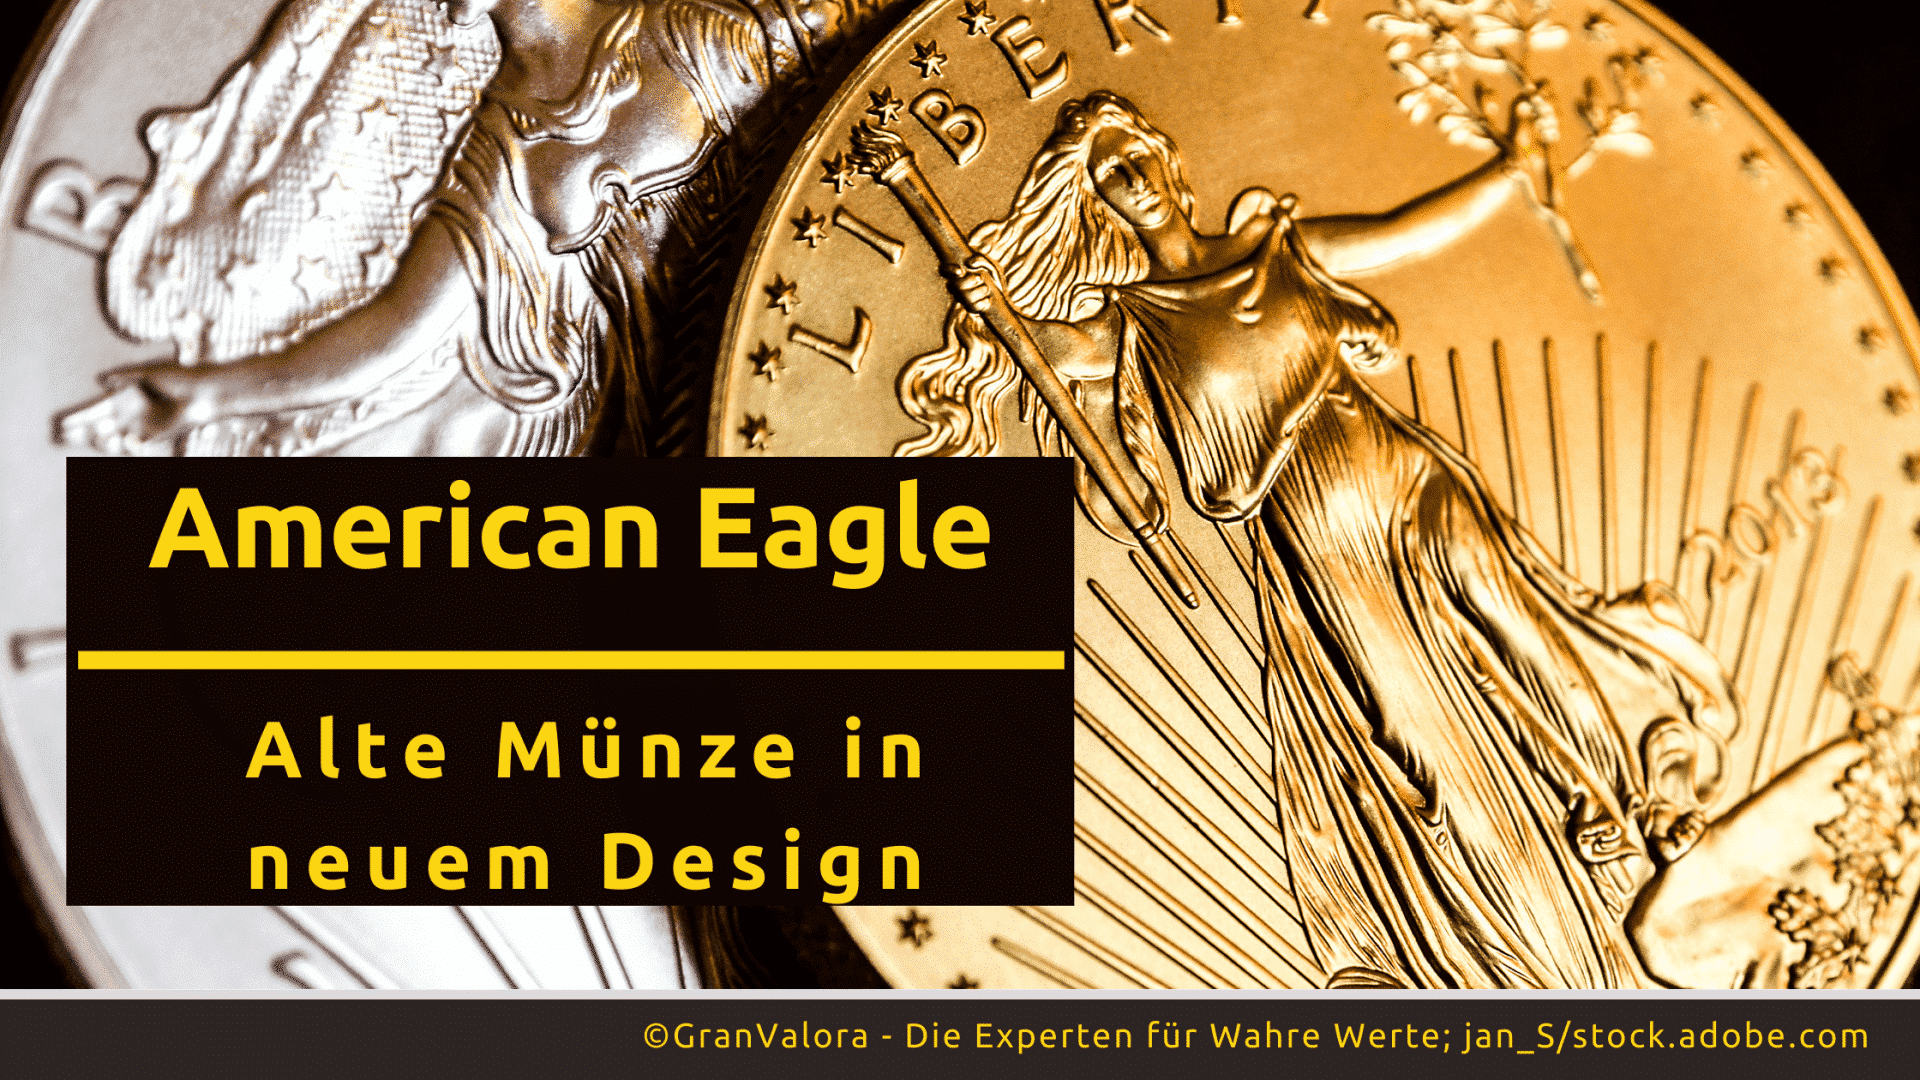 Anlagemünzen: American Eagles bekommen 2021 neues Design